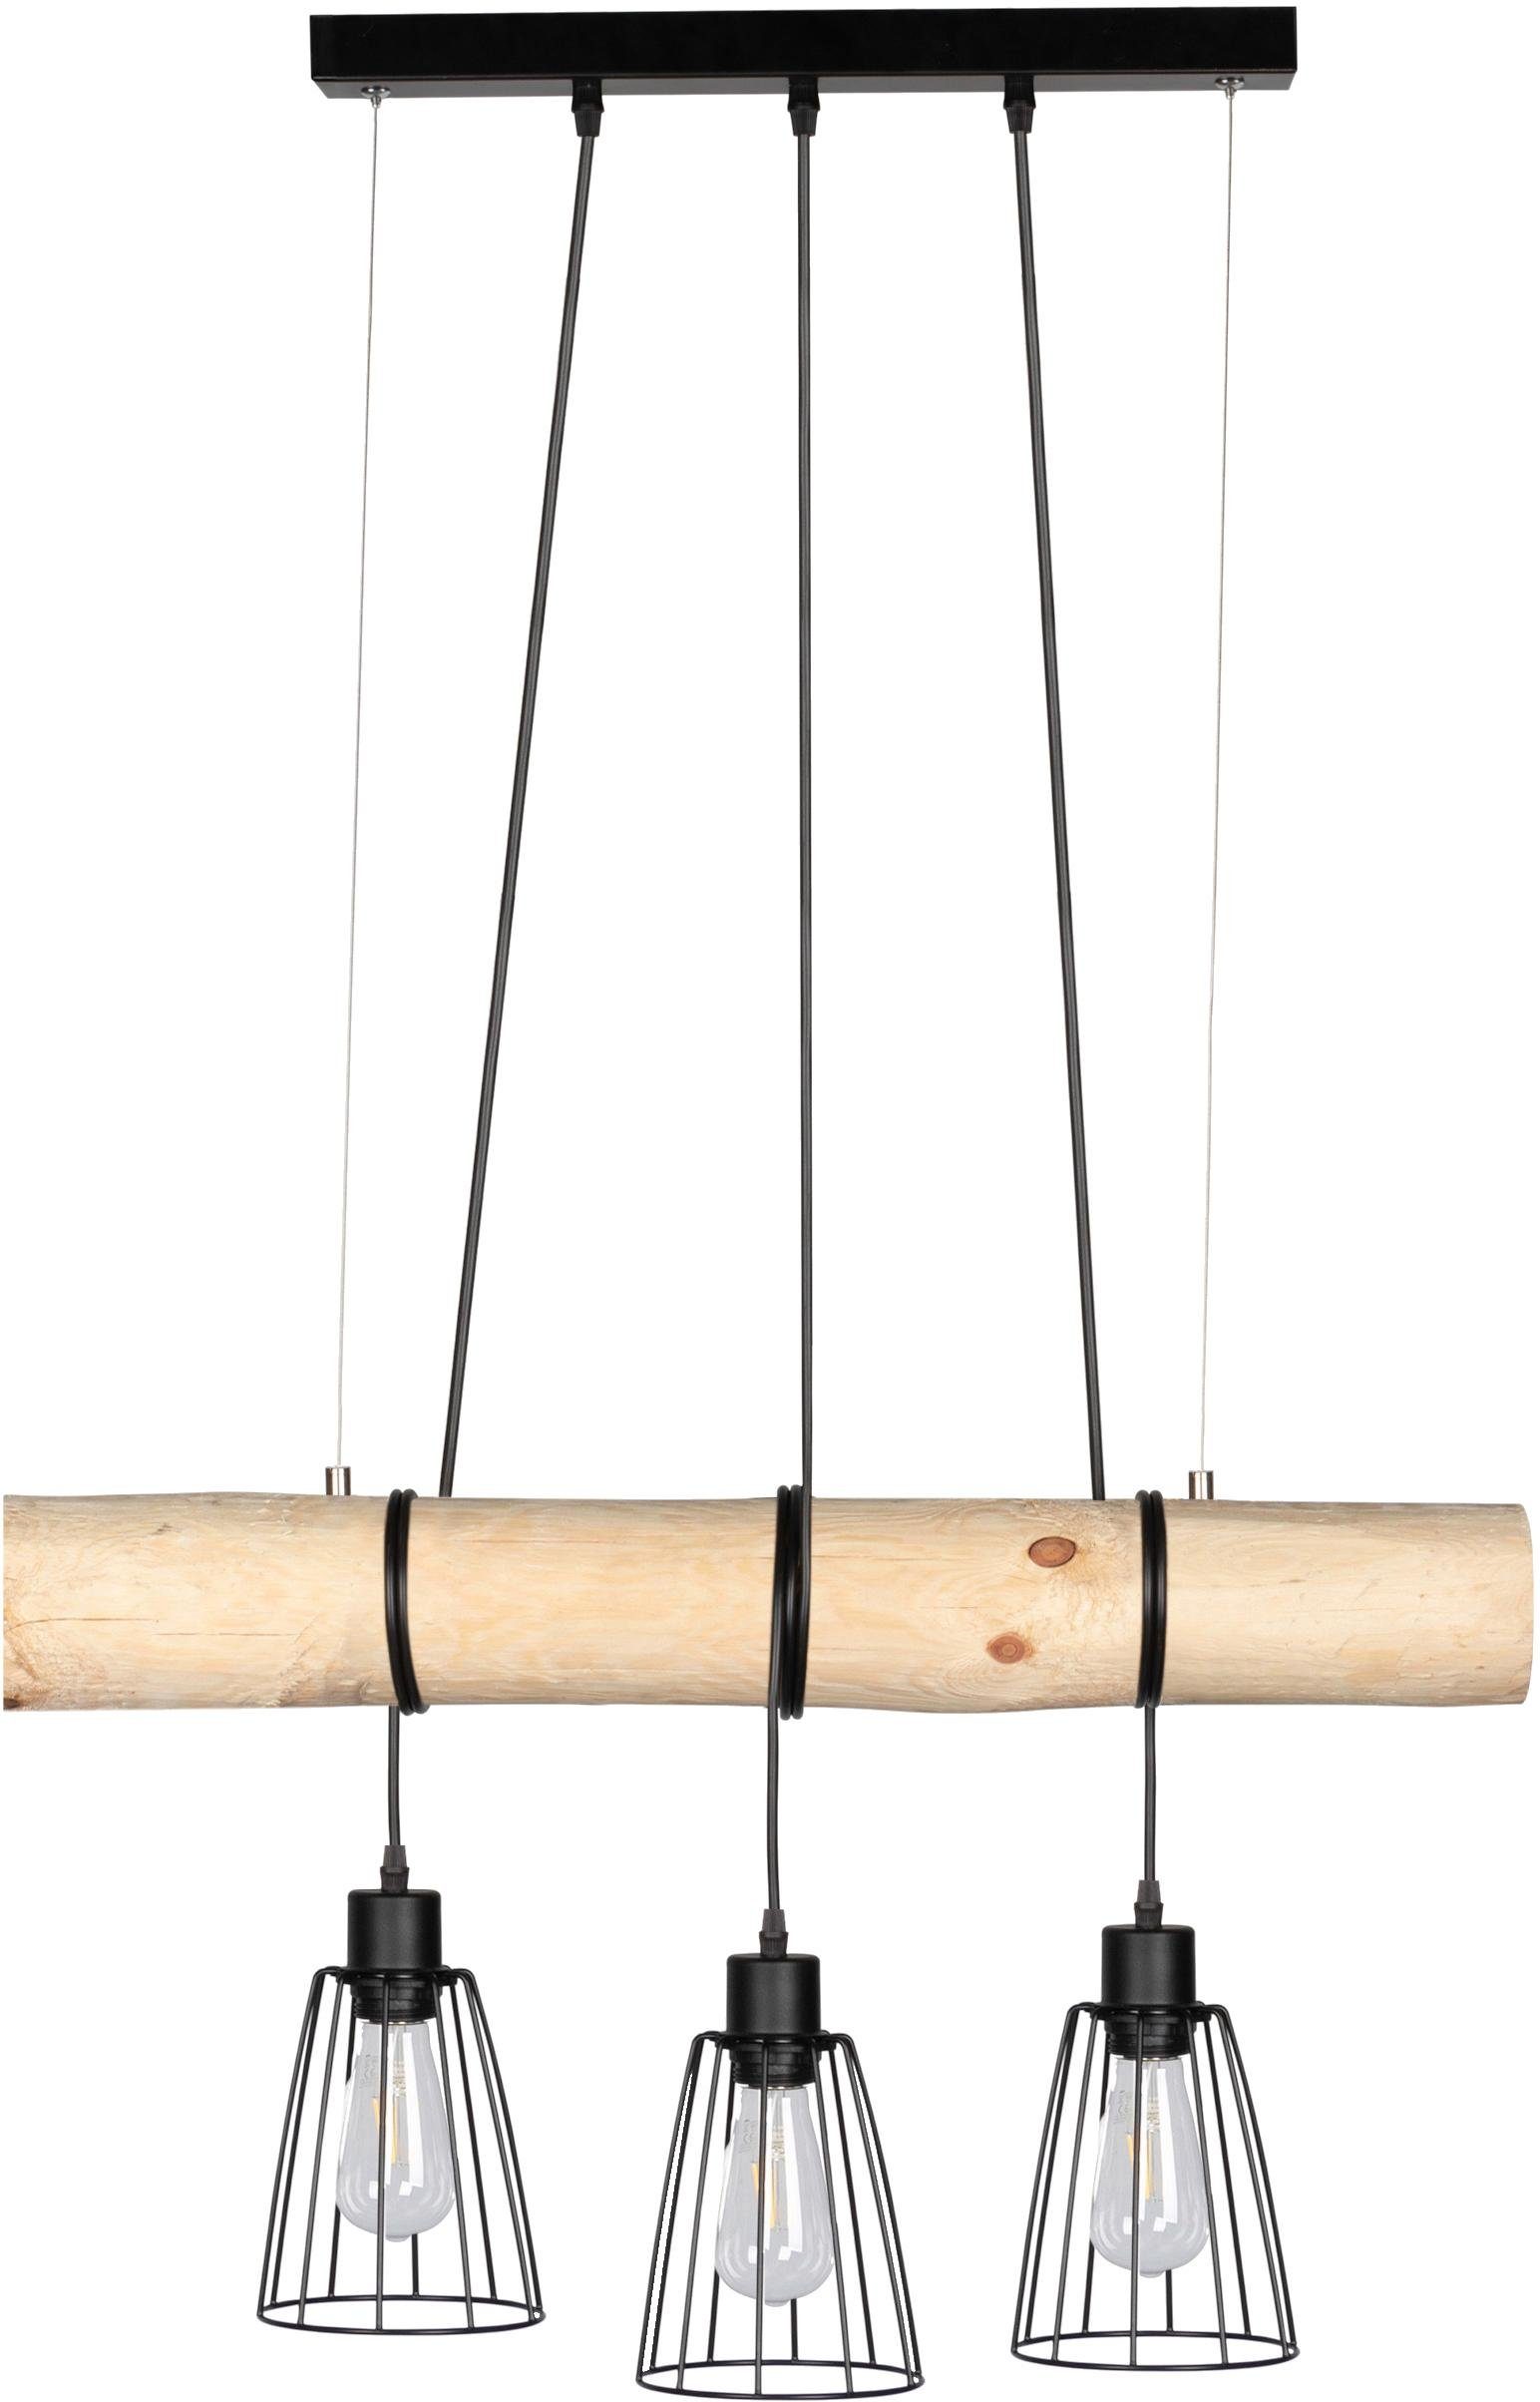 spot light hanglamp trabo hanglamp, met massief houten balken oe 8-12 cm, natuurproduct, in te korten zwart